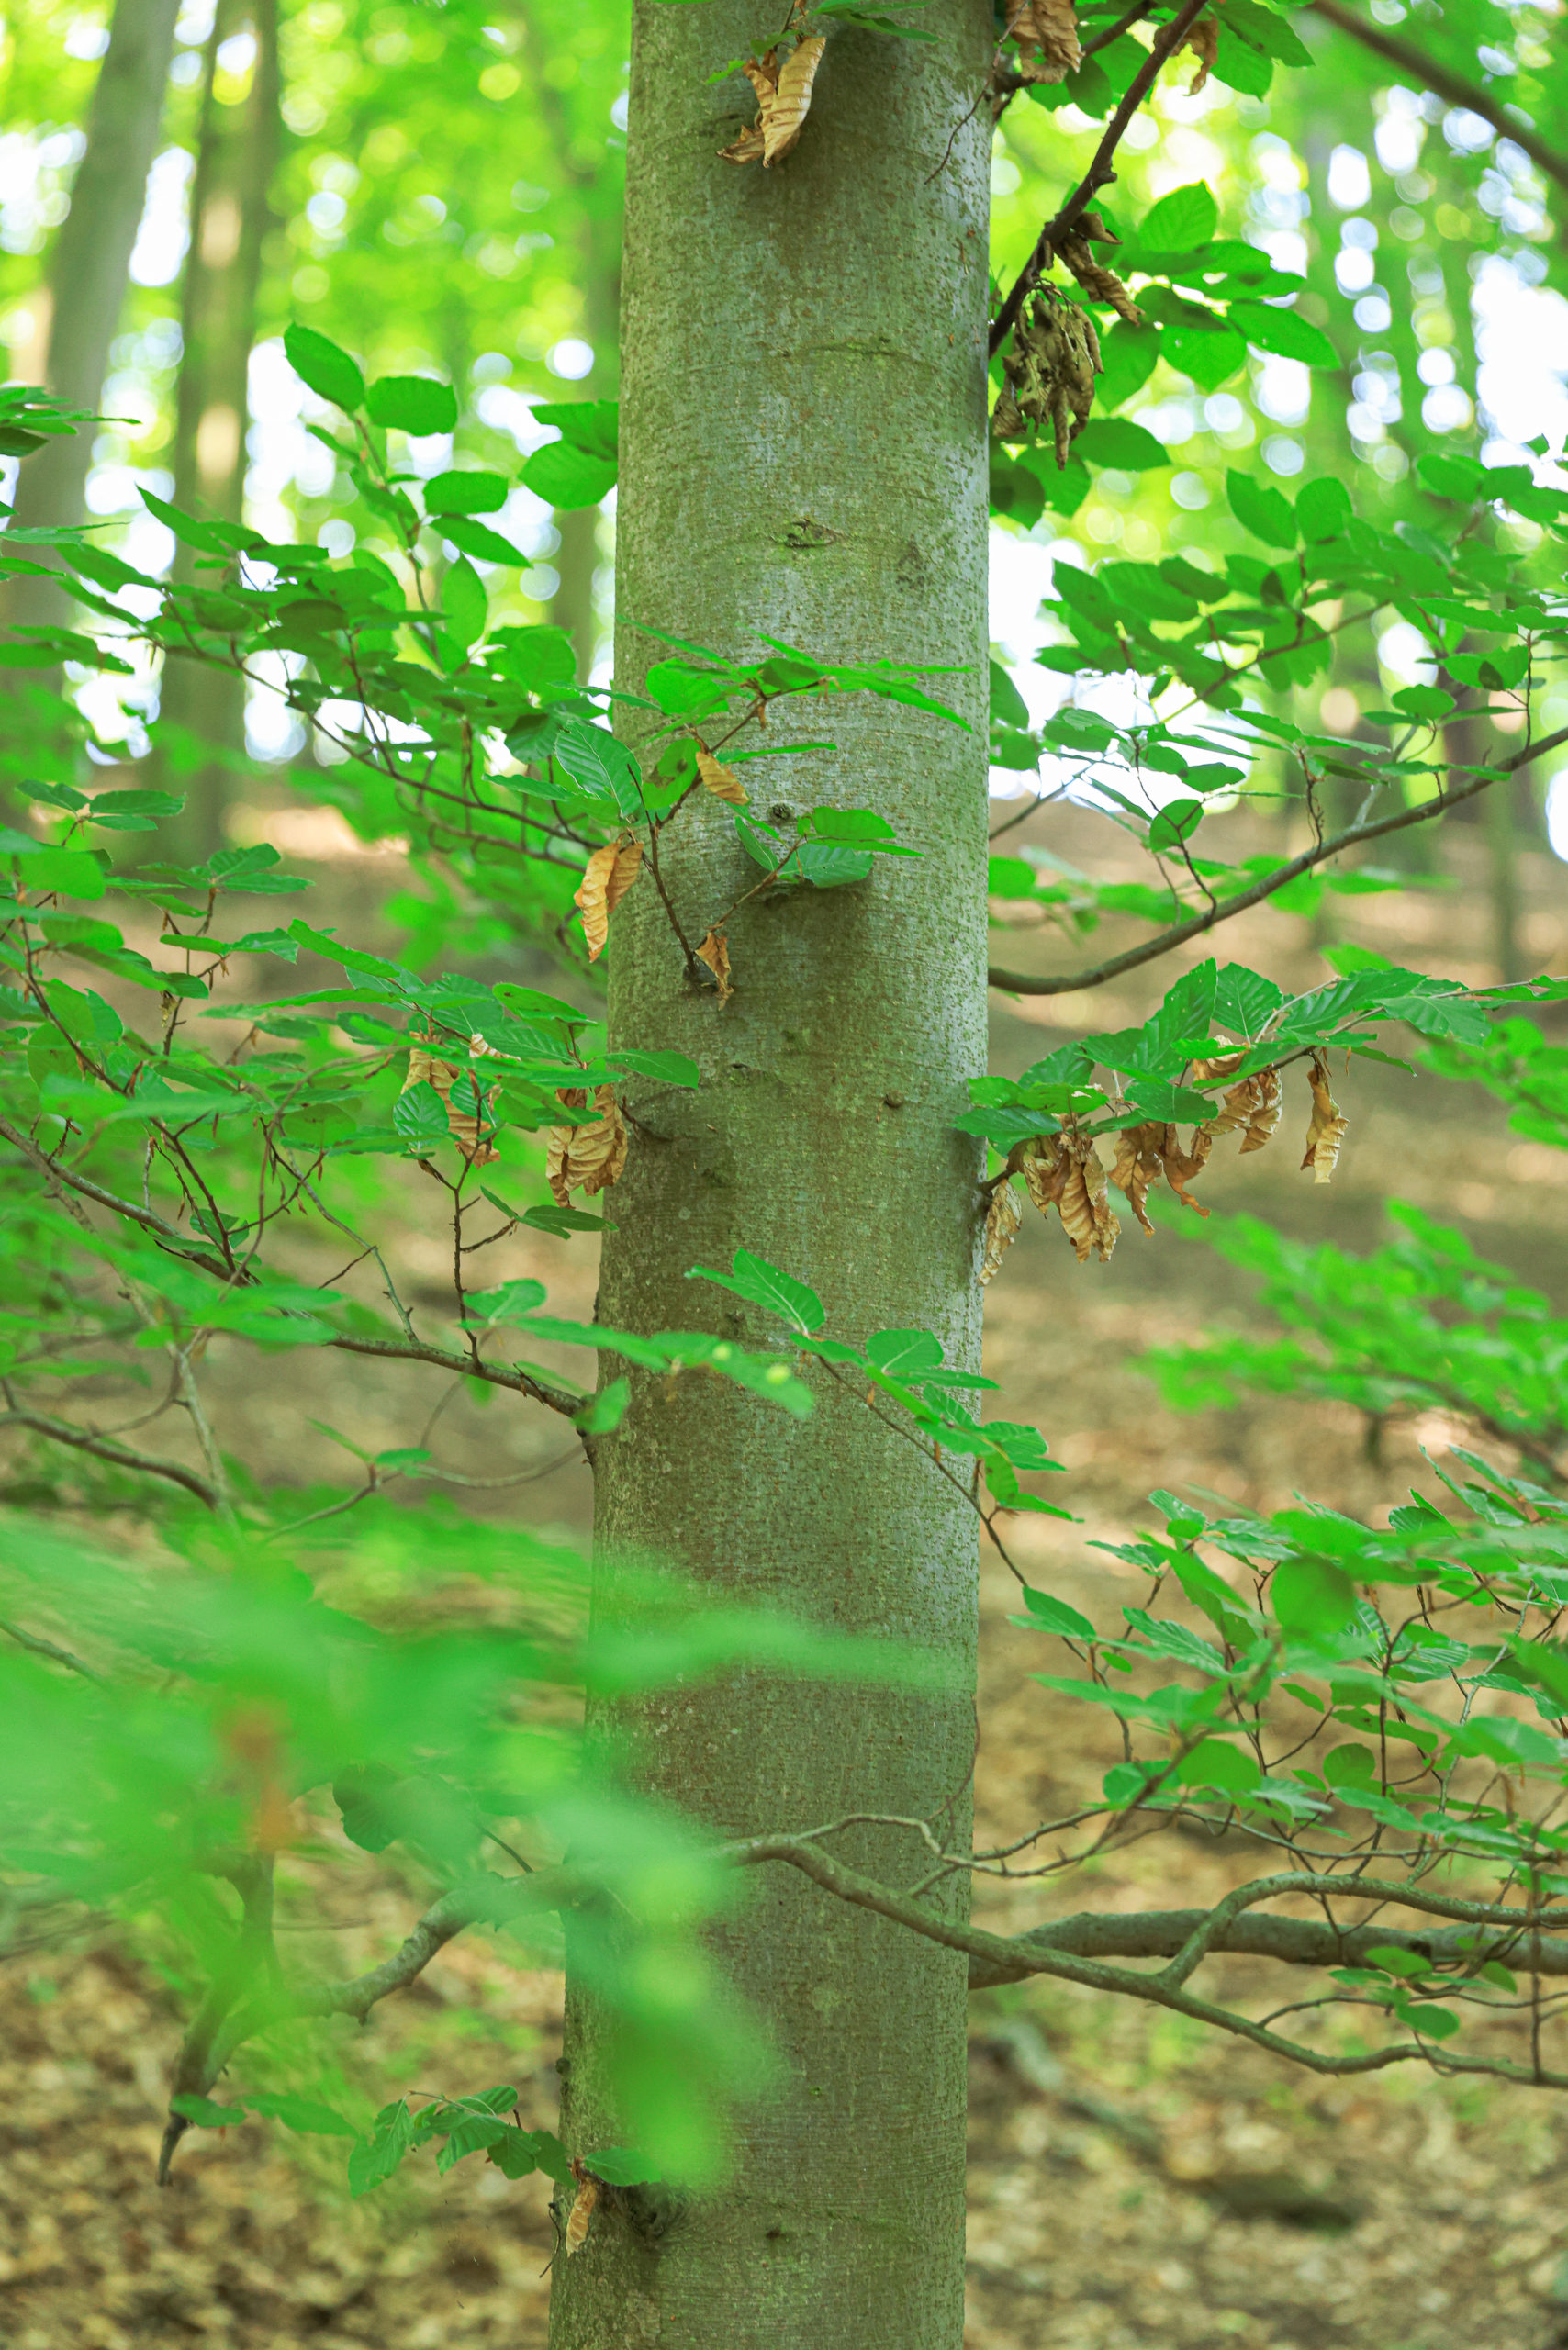 <h1>Buk lesní <i>(Fagus sylvatica)</                                                              i></h1><br />
Pohled na kmen buku lesního s menšími větvemi.